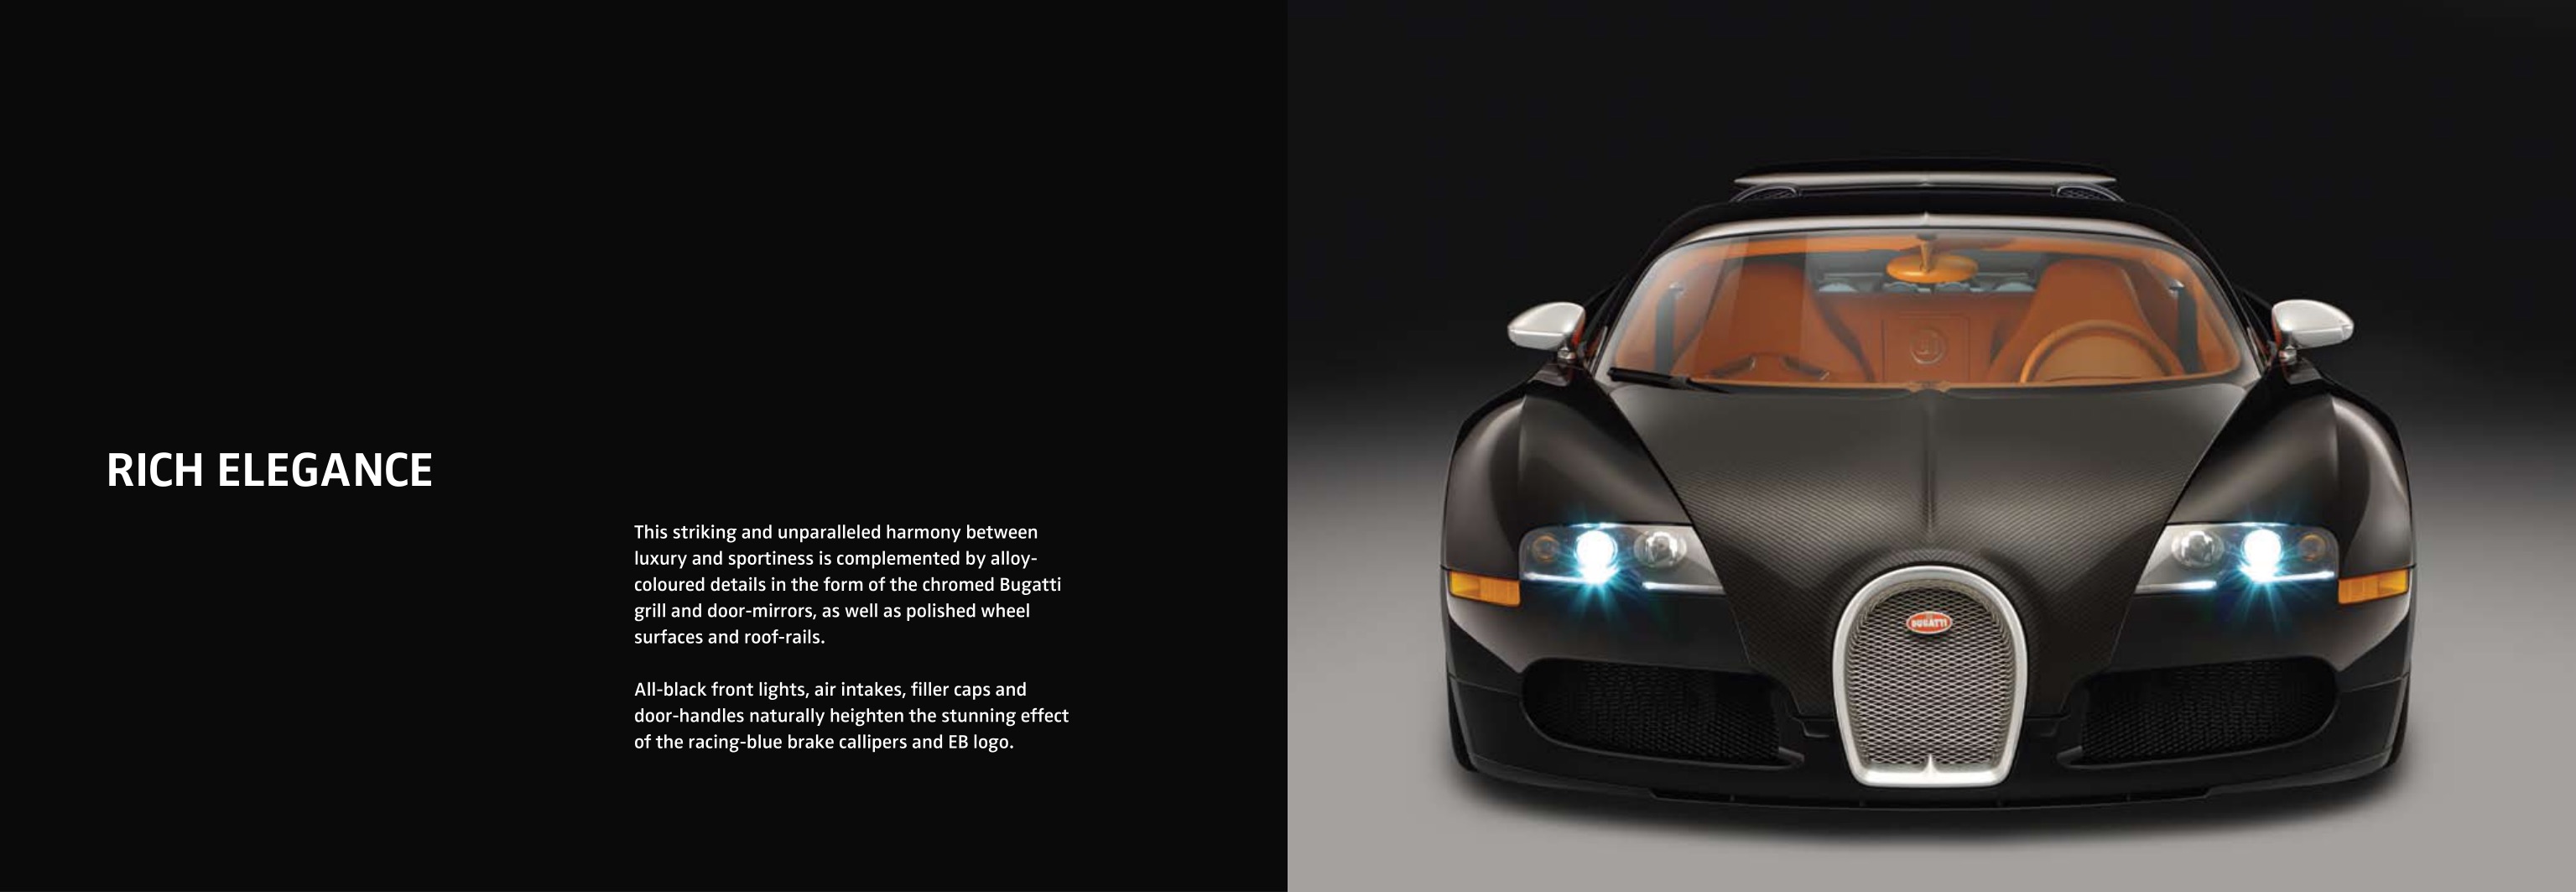 2008 Bugatti Veyron Sang Noir Brochure Page 10